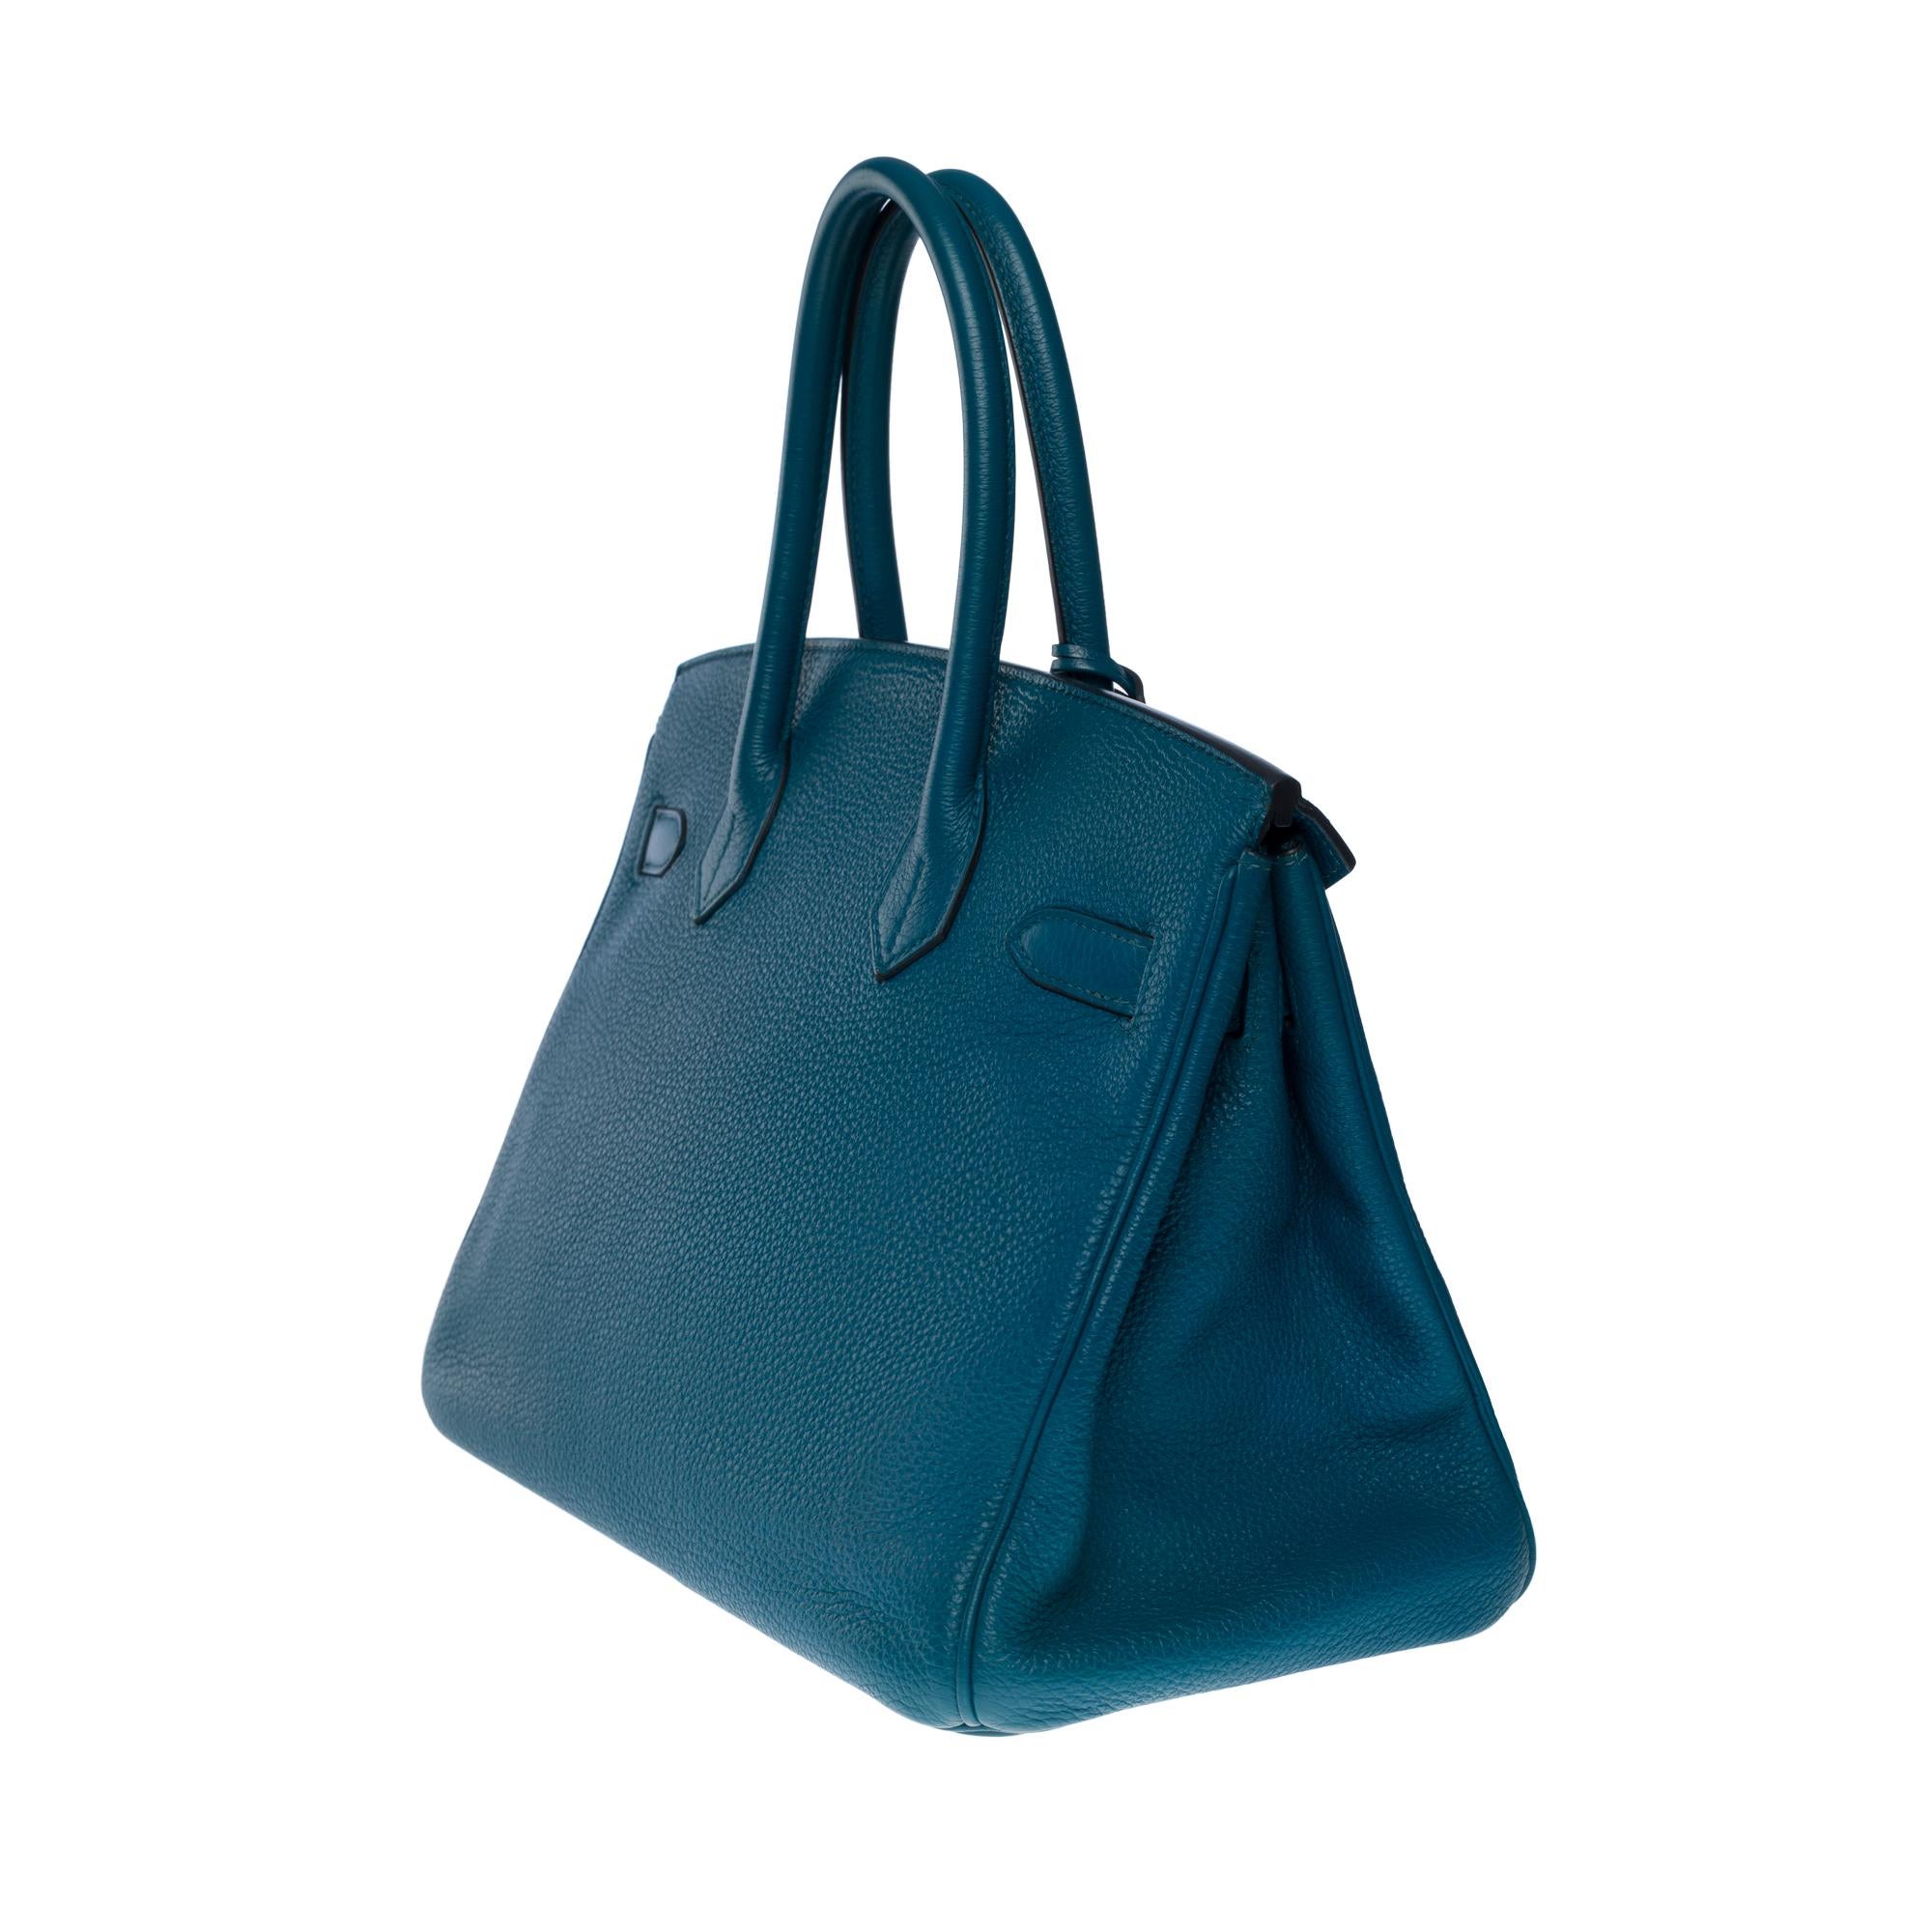 Amazing Hermès Birkin 30 handbag in Blue Colvert Togo leather, SHW 1